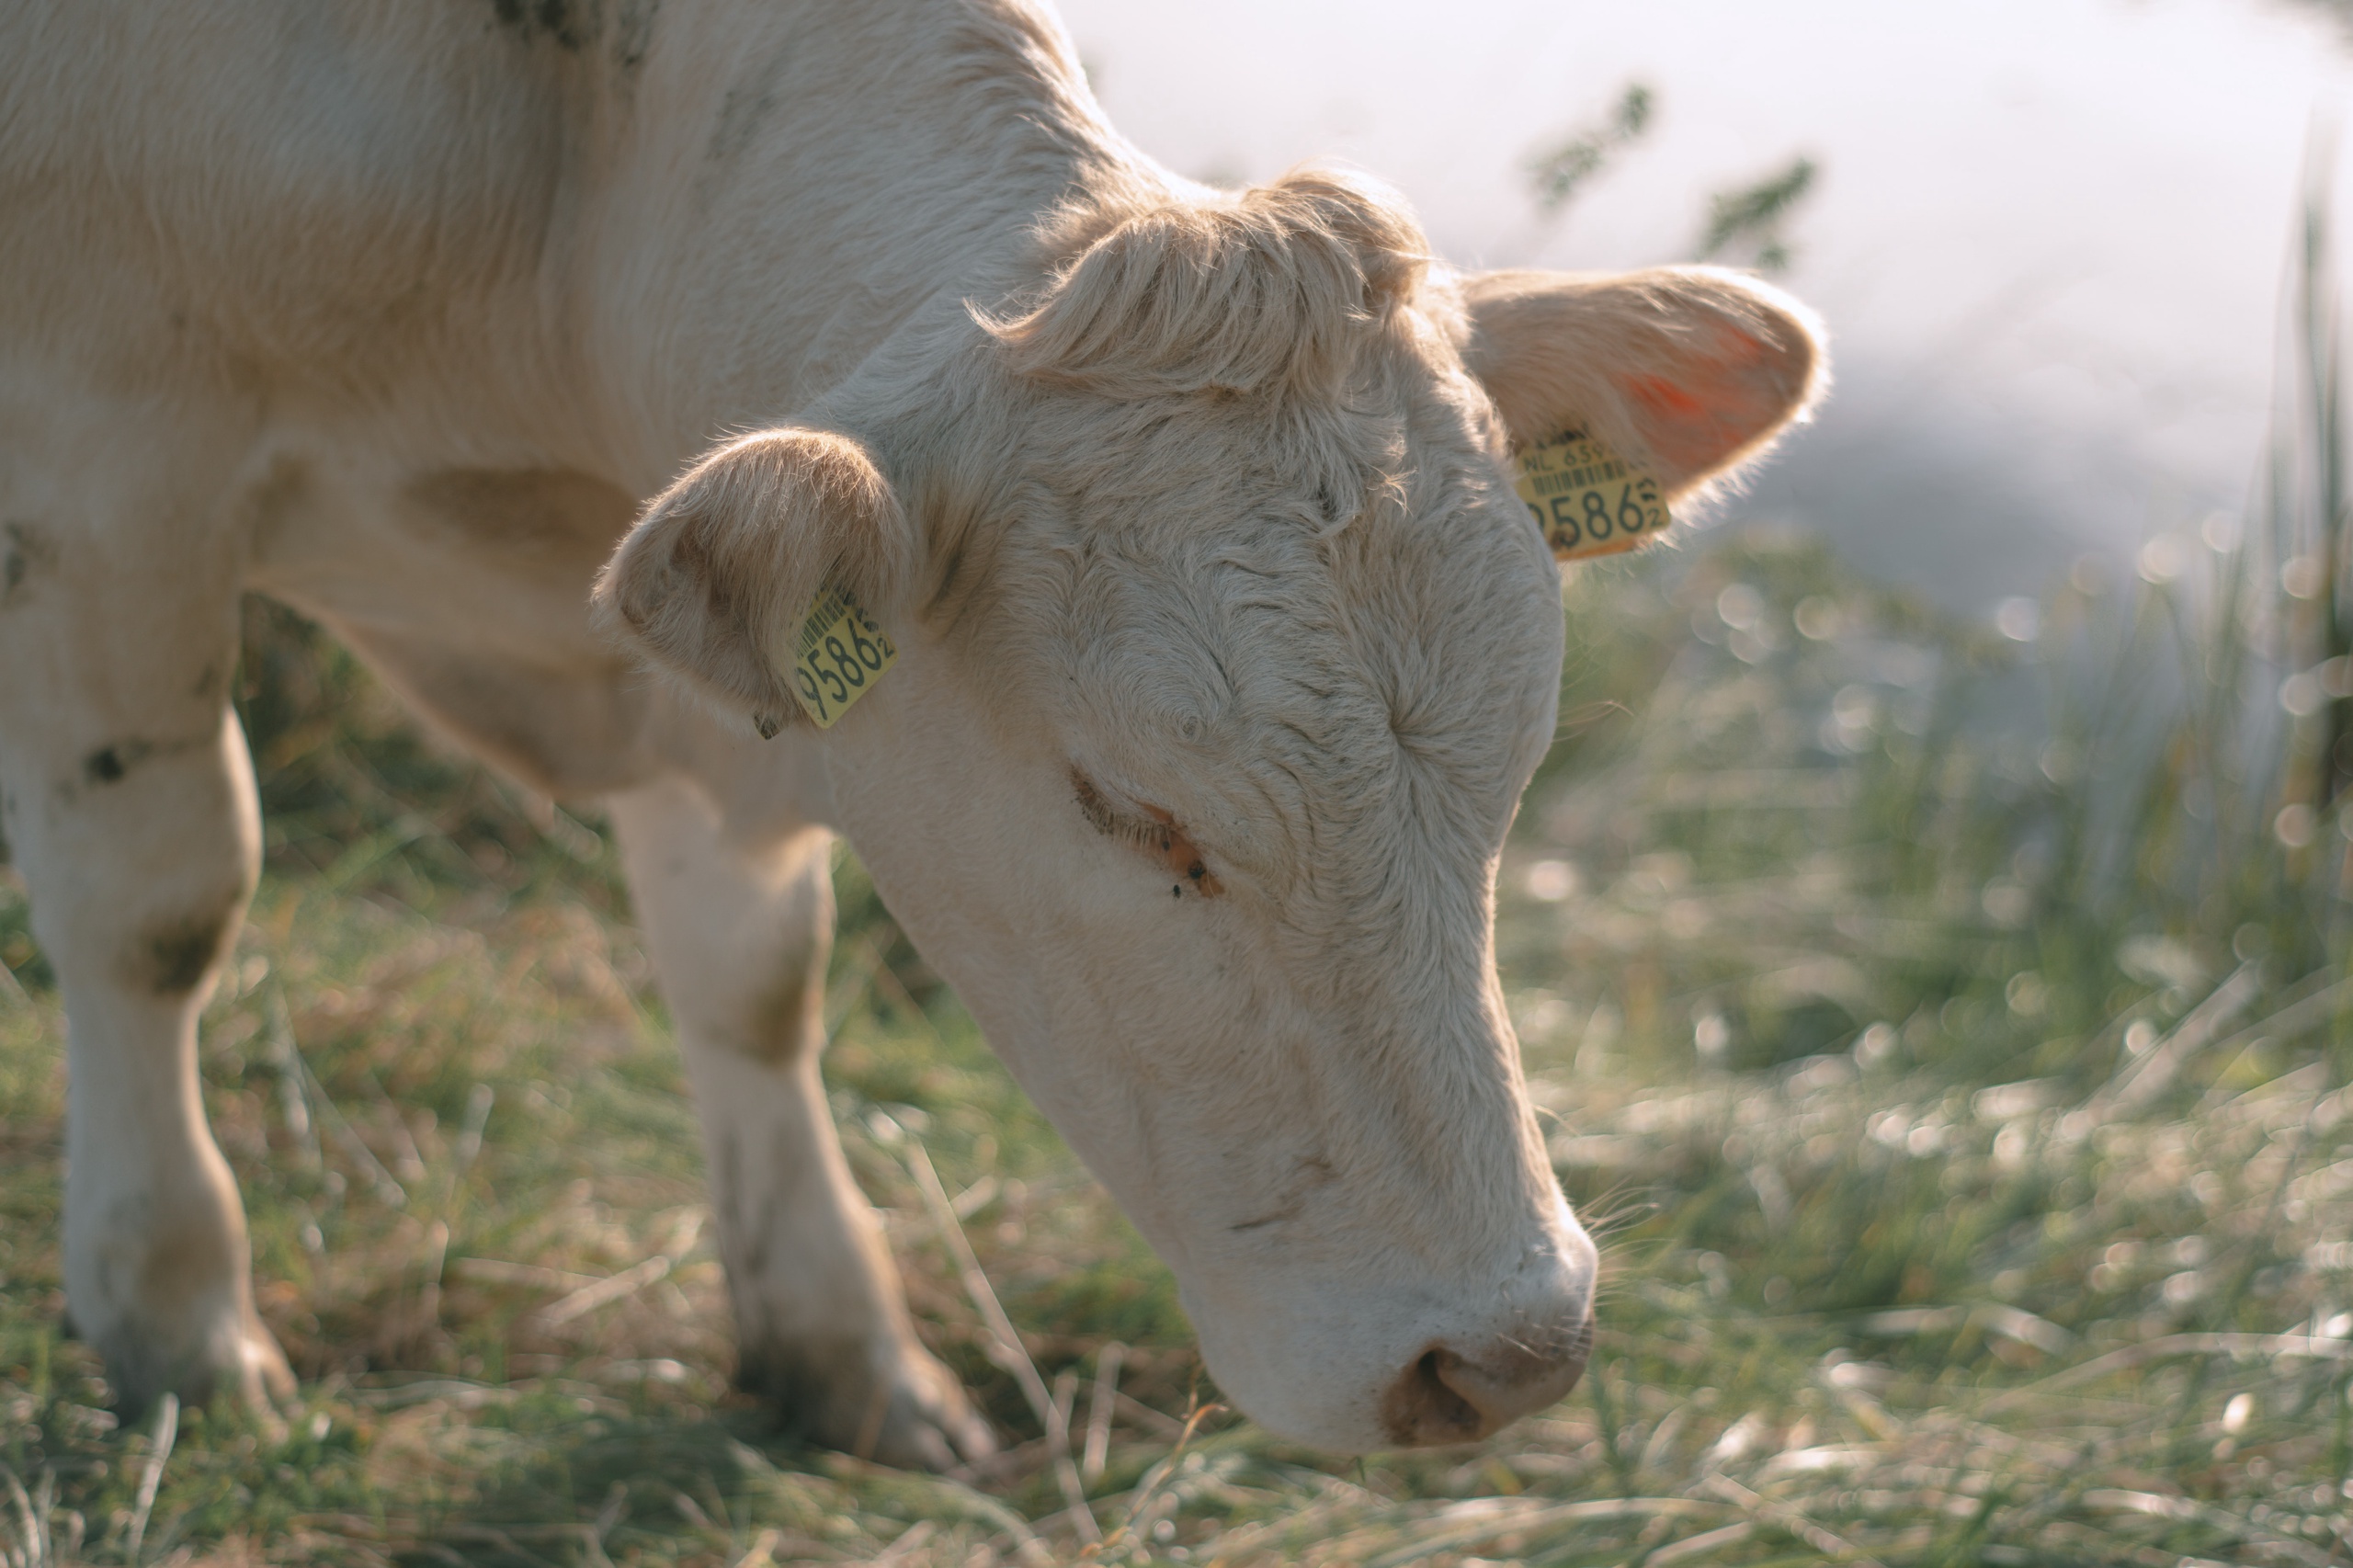 Nederlandse veehouders hebben vorig jaar opnieuw minder stikstof uitgestoten dan een jaar eerder. Volgens het Centraal Bureau voor de Statistiek (CBS) zat hun uitstoot zelfs bijna 5 procent onder het nieuwe stikstofplafond dat de Europese Commissie heeft vastgesteld voor de Nederlandse veestapel. 